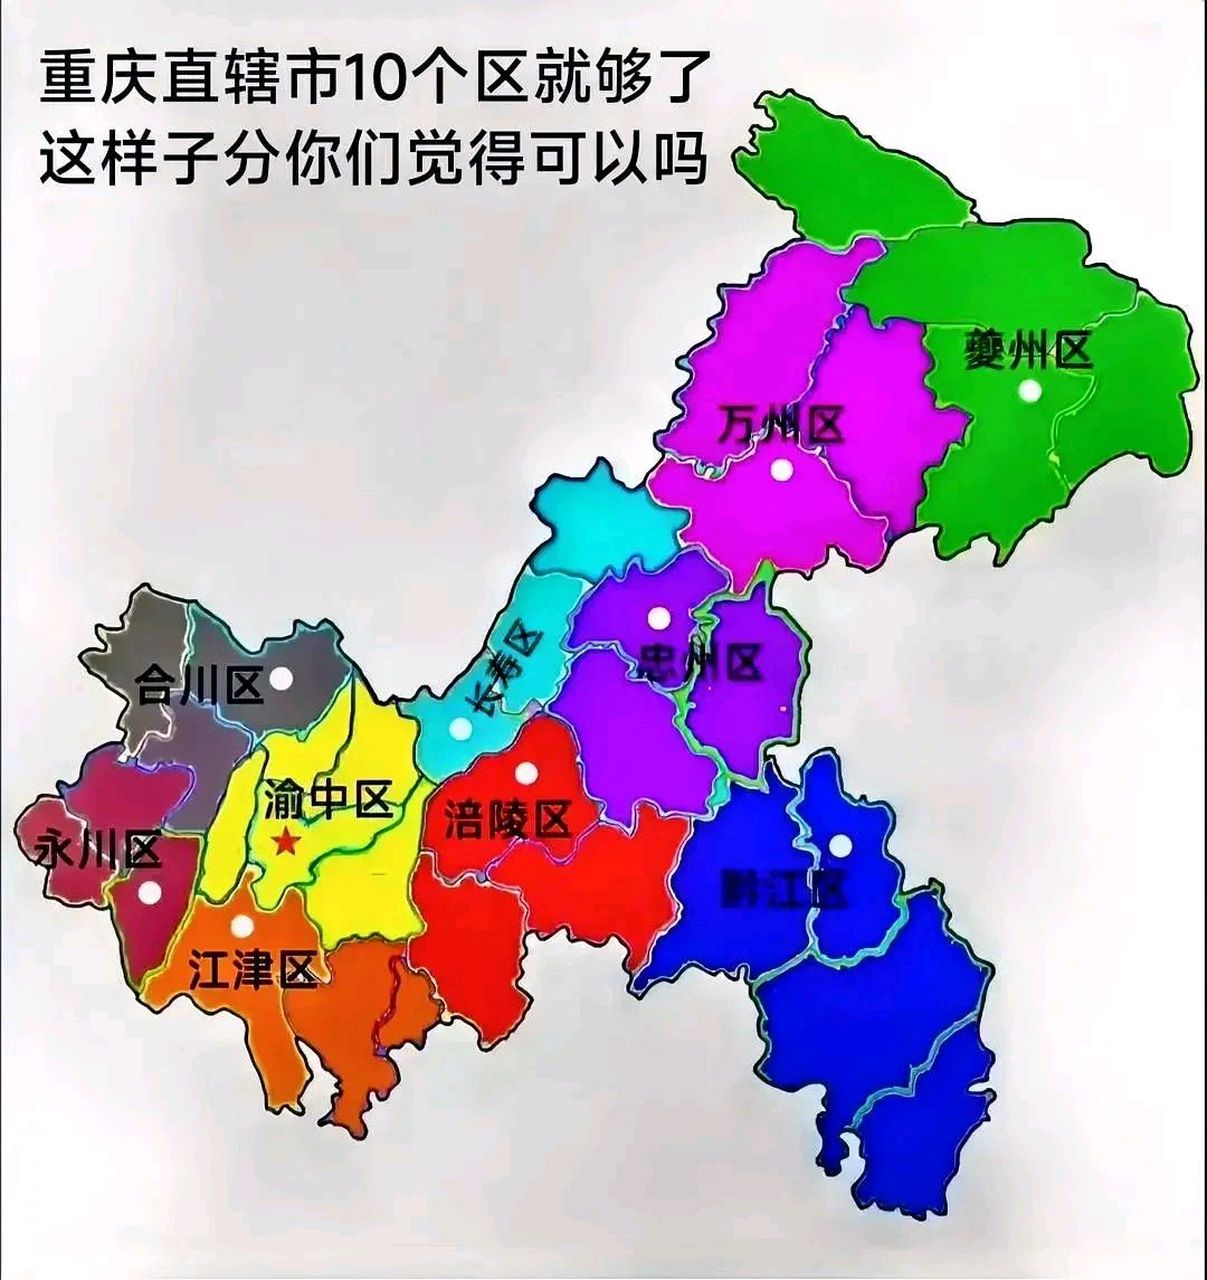 重庆市行政区划调整示意图